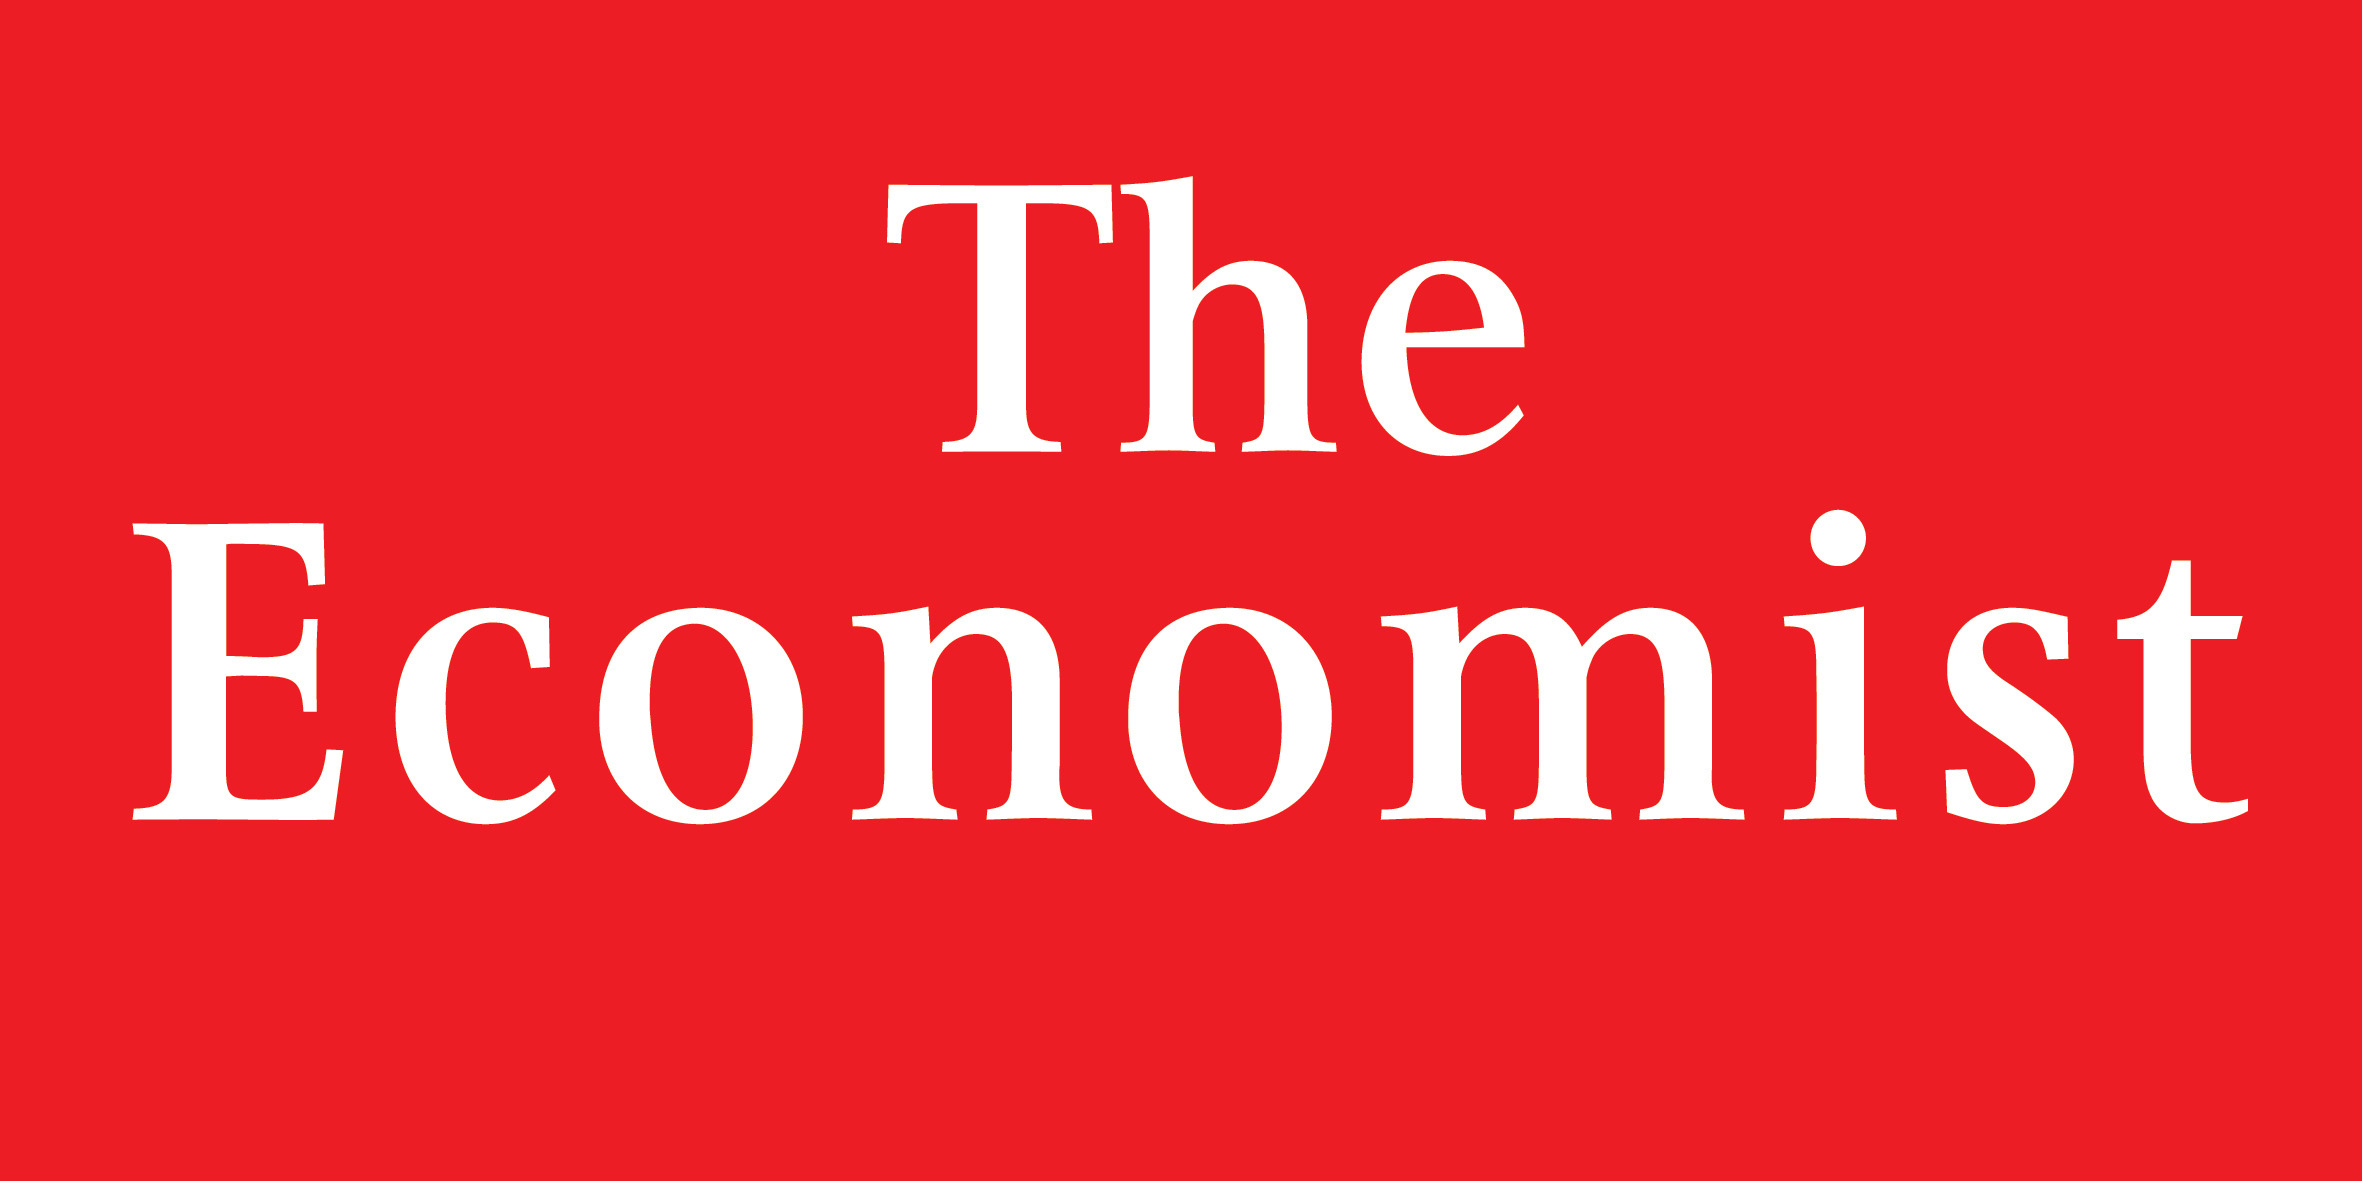 Has the Economist got it right?